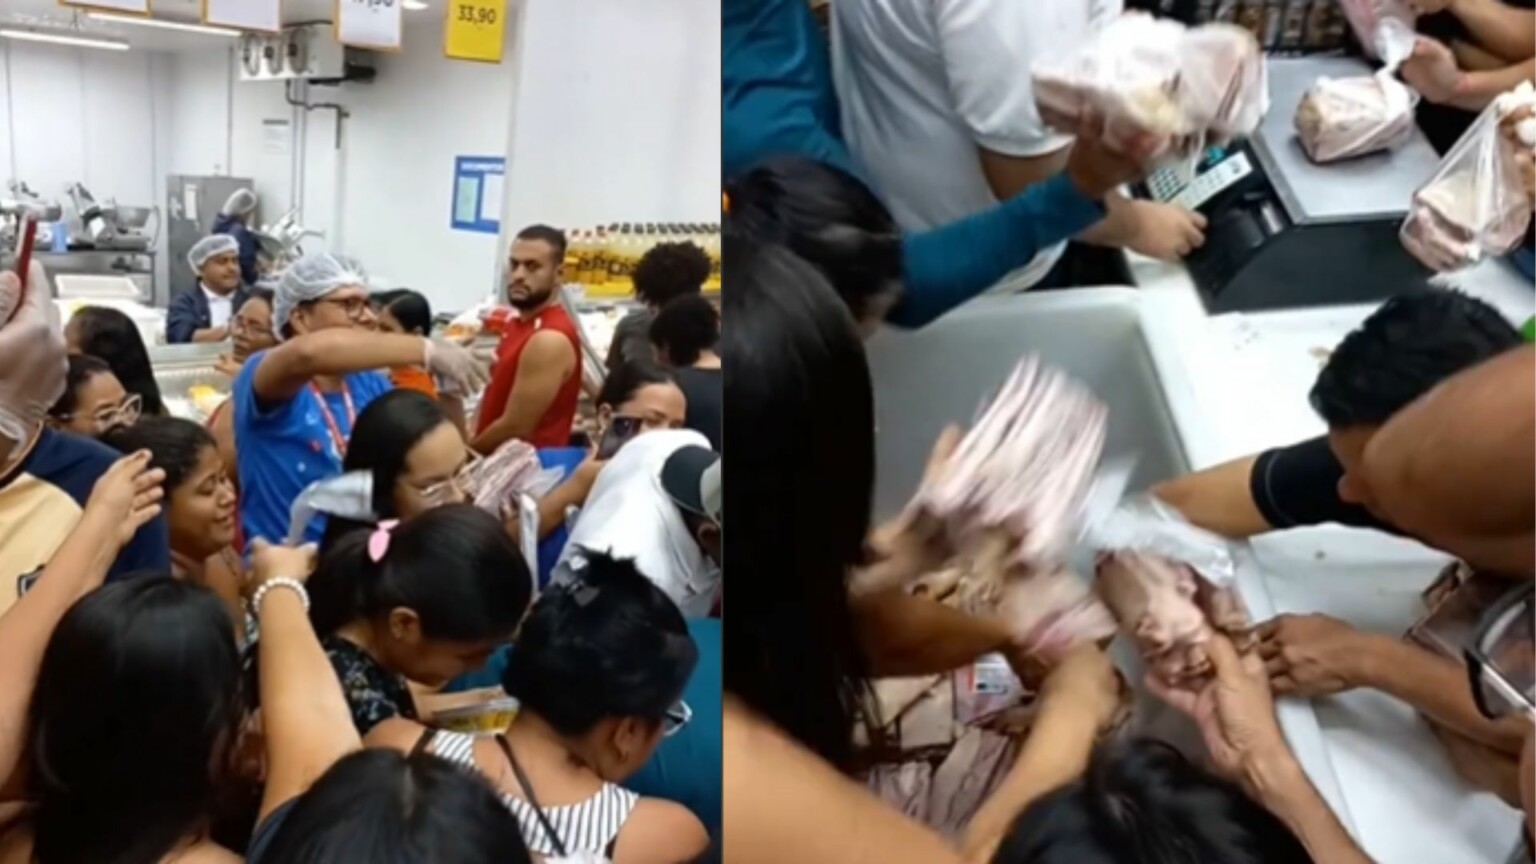 Vídeo: clientes provocam tumulto para comprar charque em supermercado no Pará